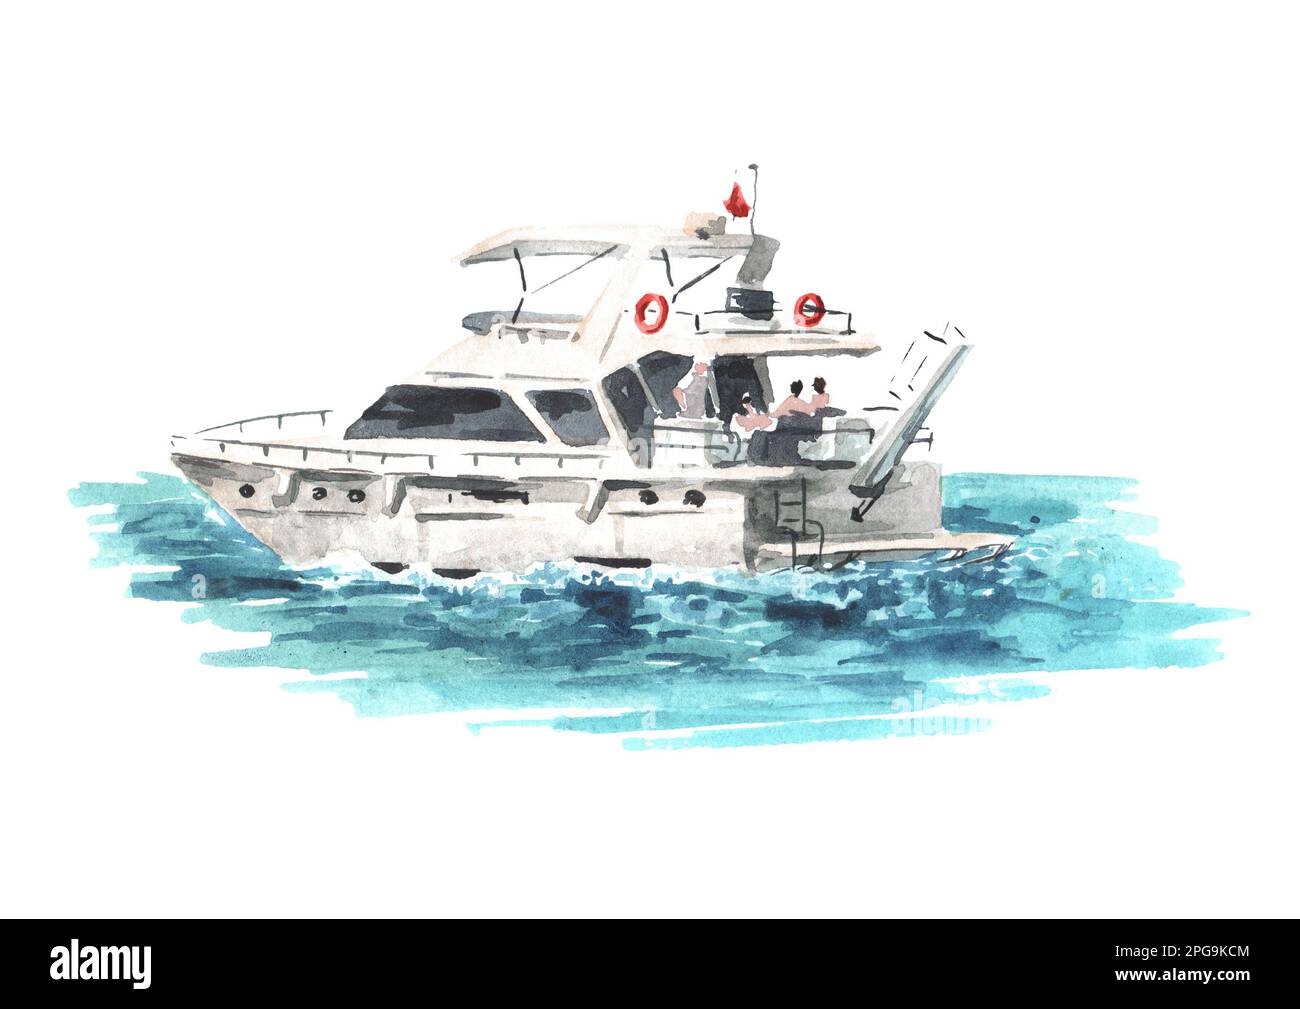 Bateau de mer, yacht. Illustration aquarelle dessinée à la main, isolée sur fond blanc Banque D'Images